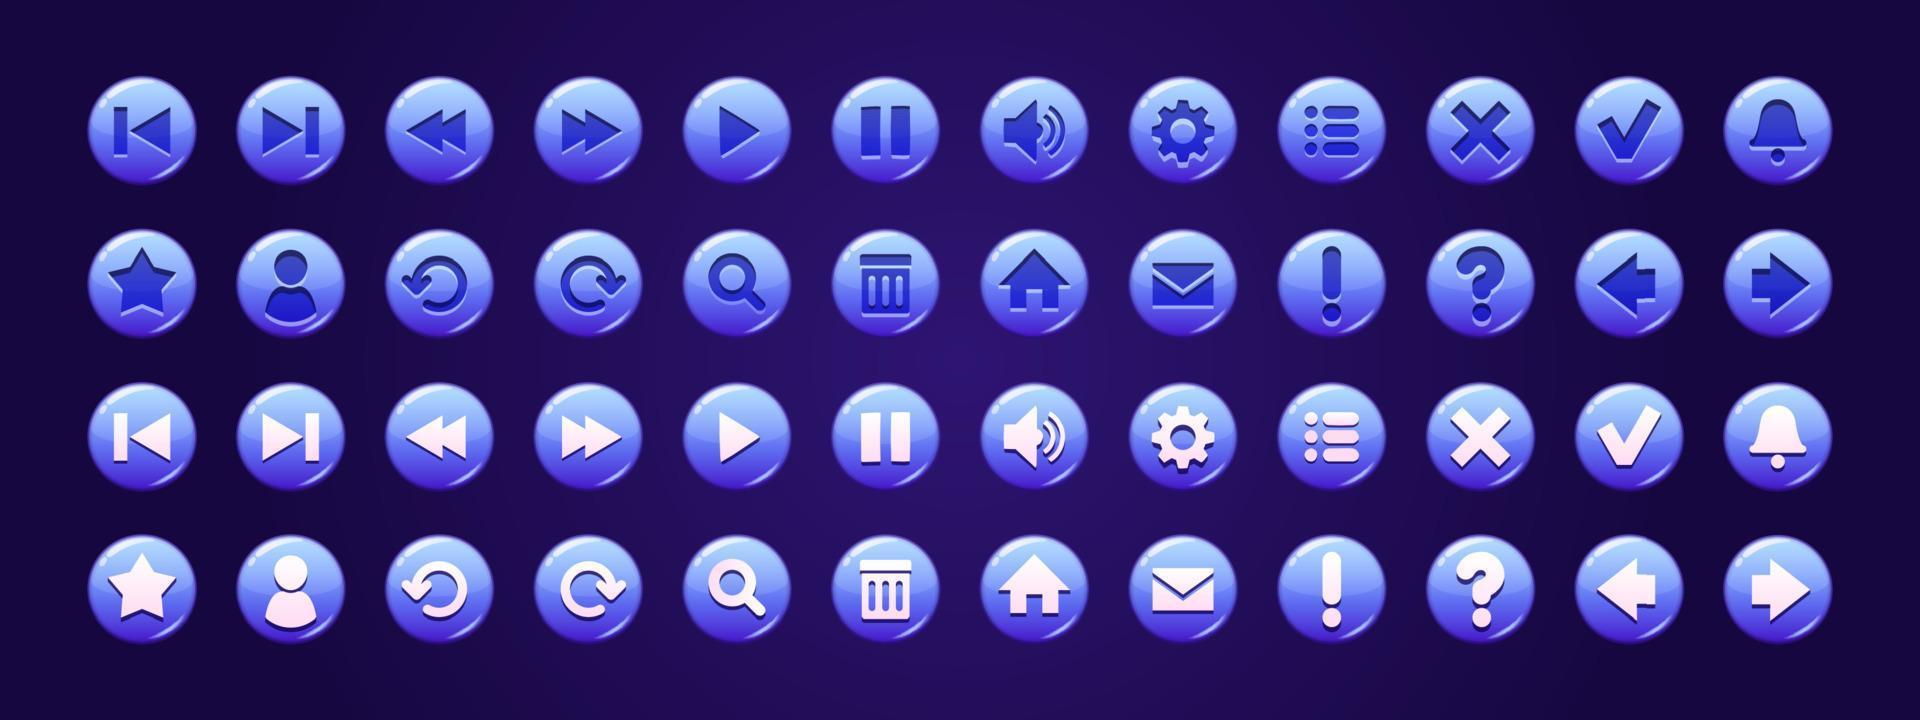 blauw cirkel toetsen met pictogrammen voor website of spel vector